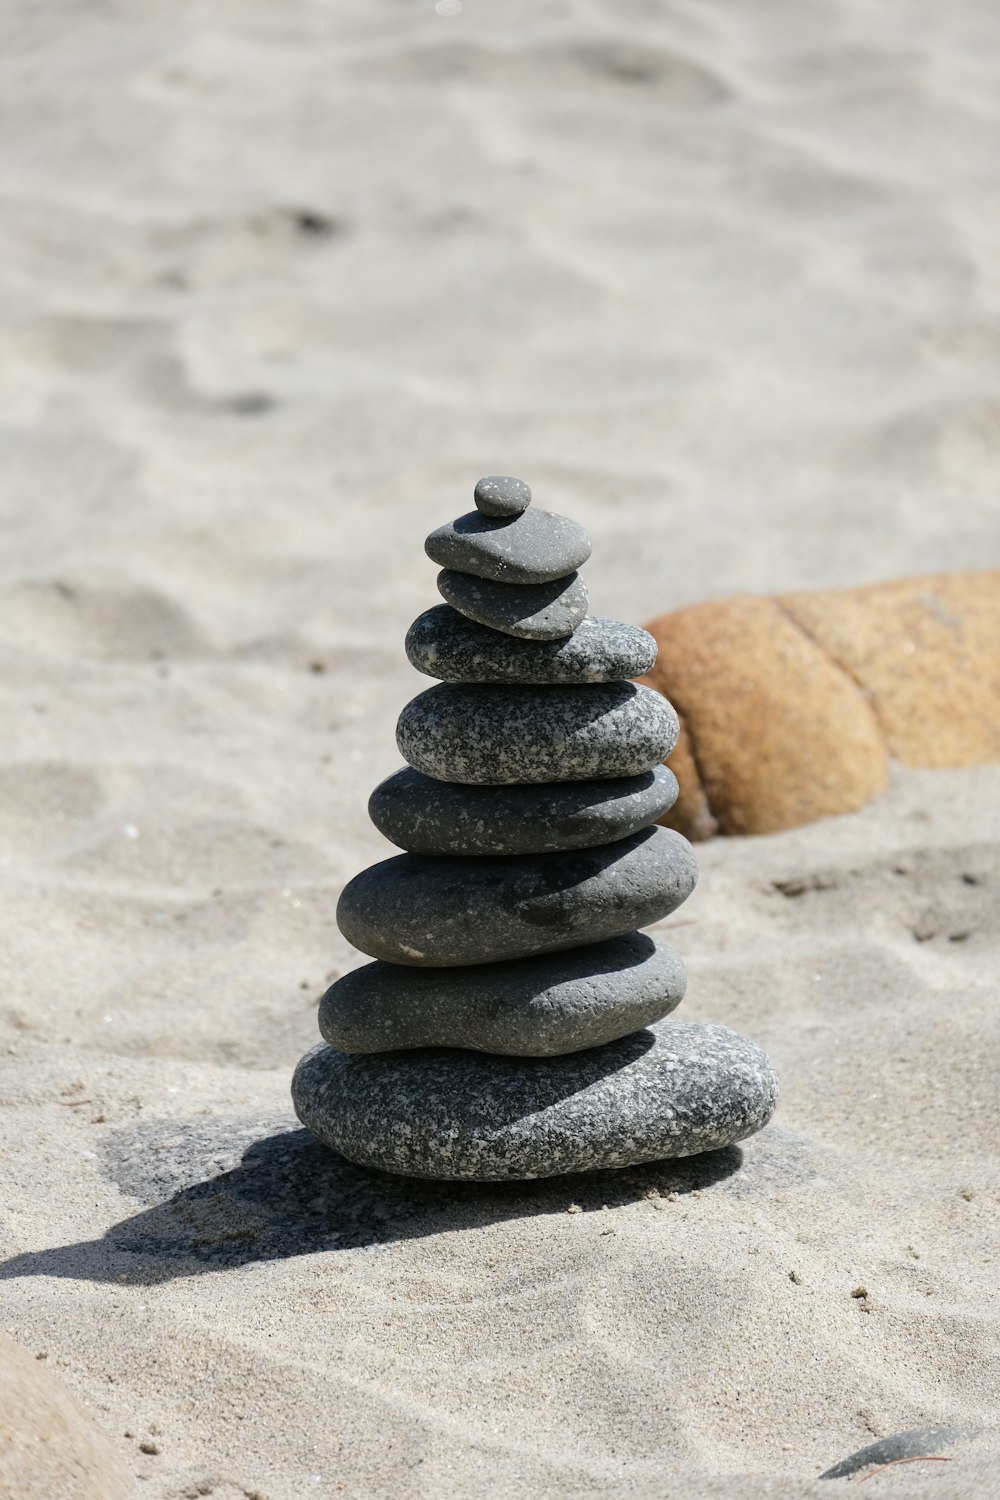 모래 사장 위에 앉아있는 바위 더미